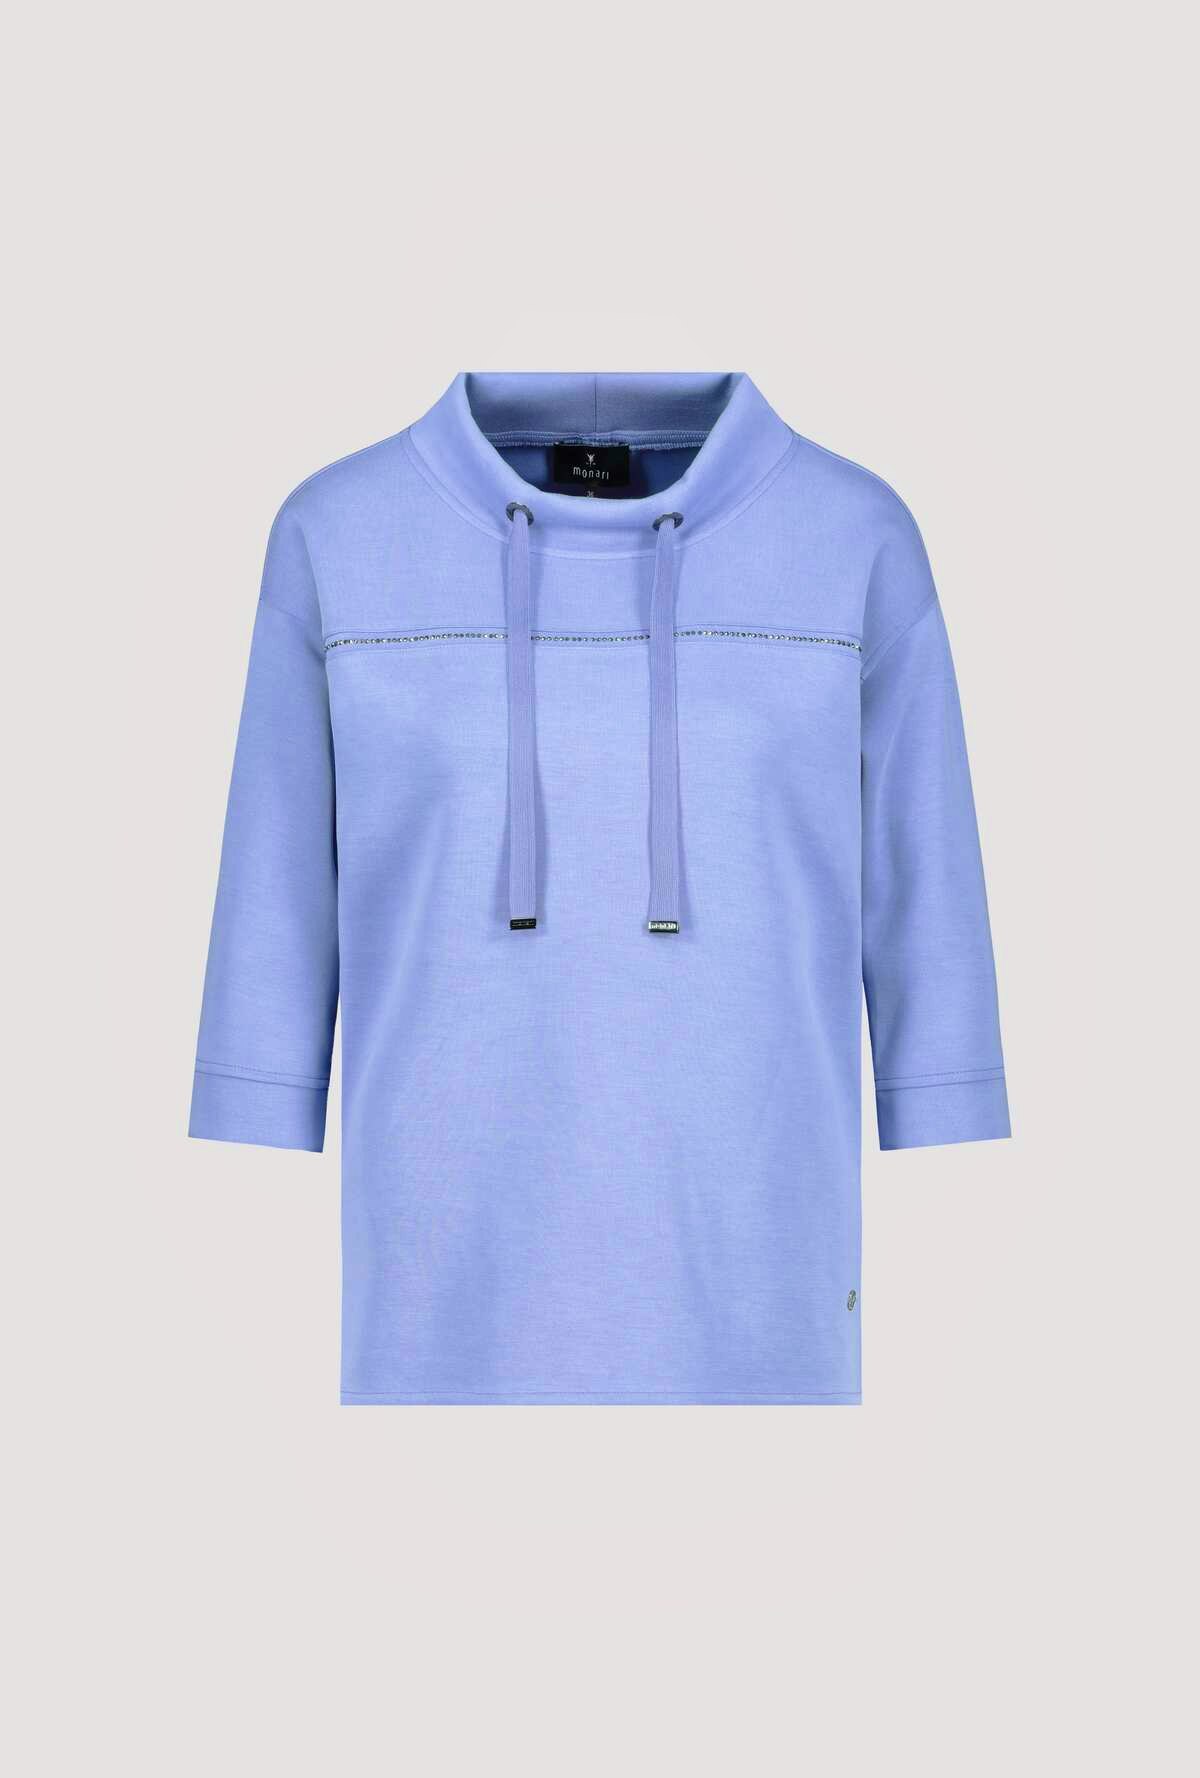 Monari Longsleeve Sweatshirt aqua blue